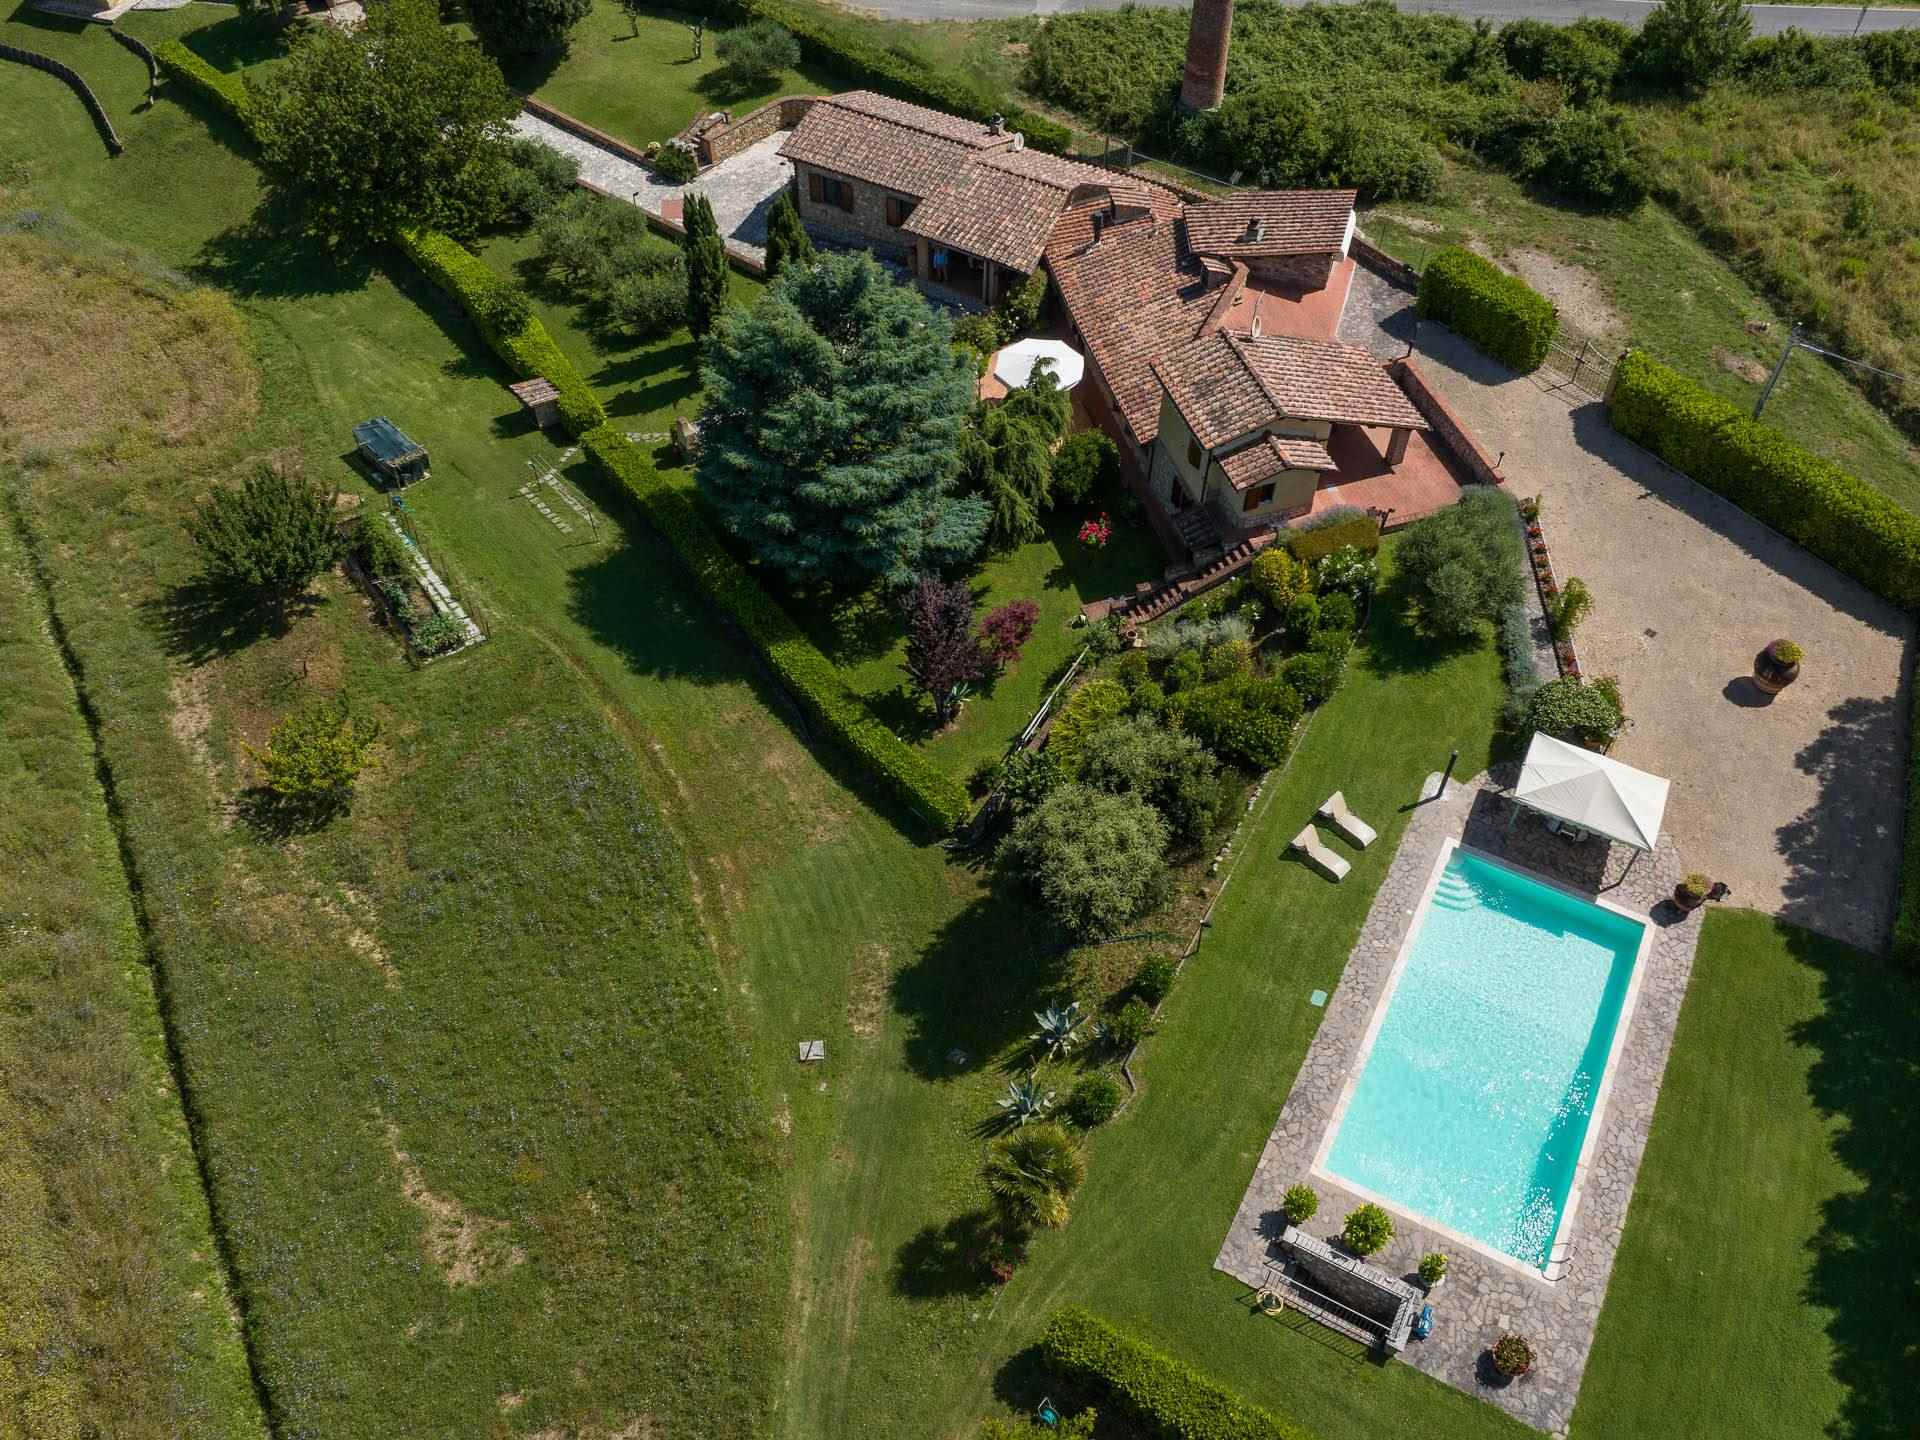 IL MERLO, CASOLE D'ELSA, Villa zu verkaufen von 242 Qm, Beste ausstattung, Heizung Unabhaengig, Energie-klasse: D, Epi: 135 kwh/m2 jahr, am boden 